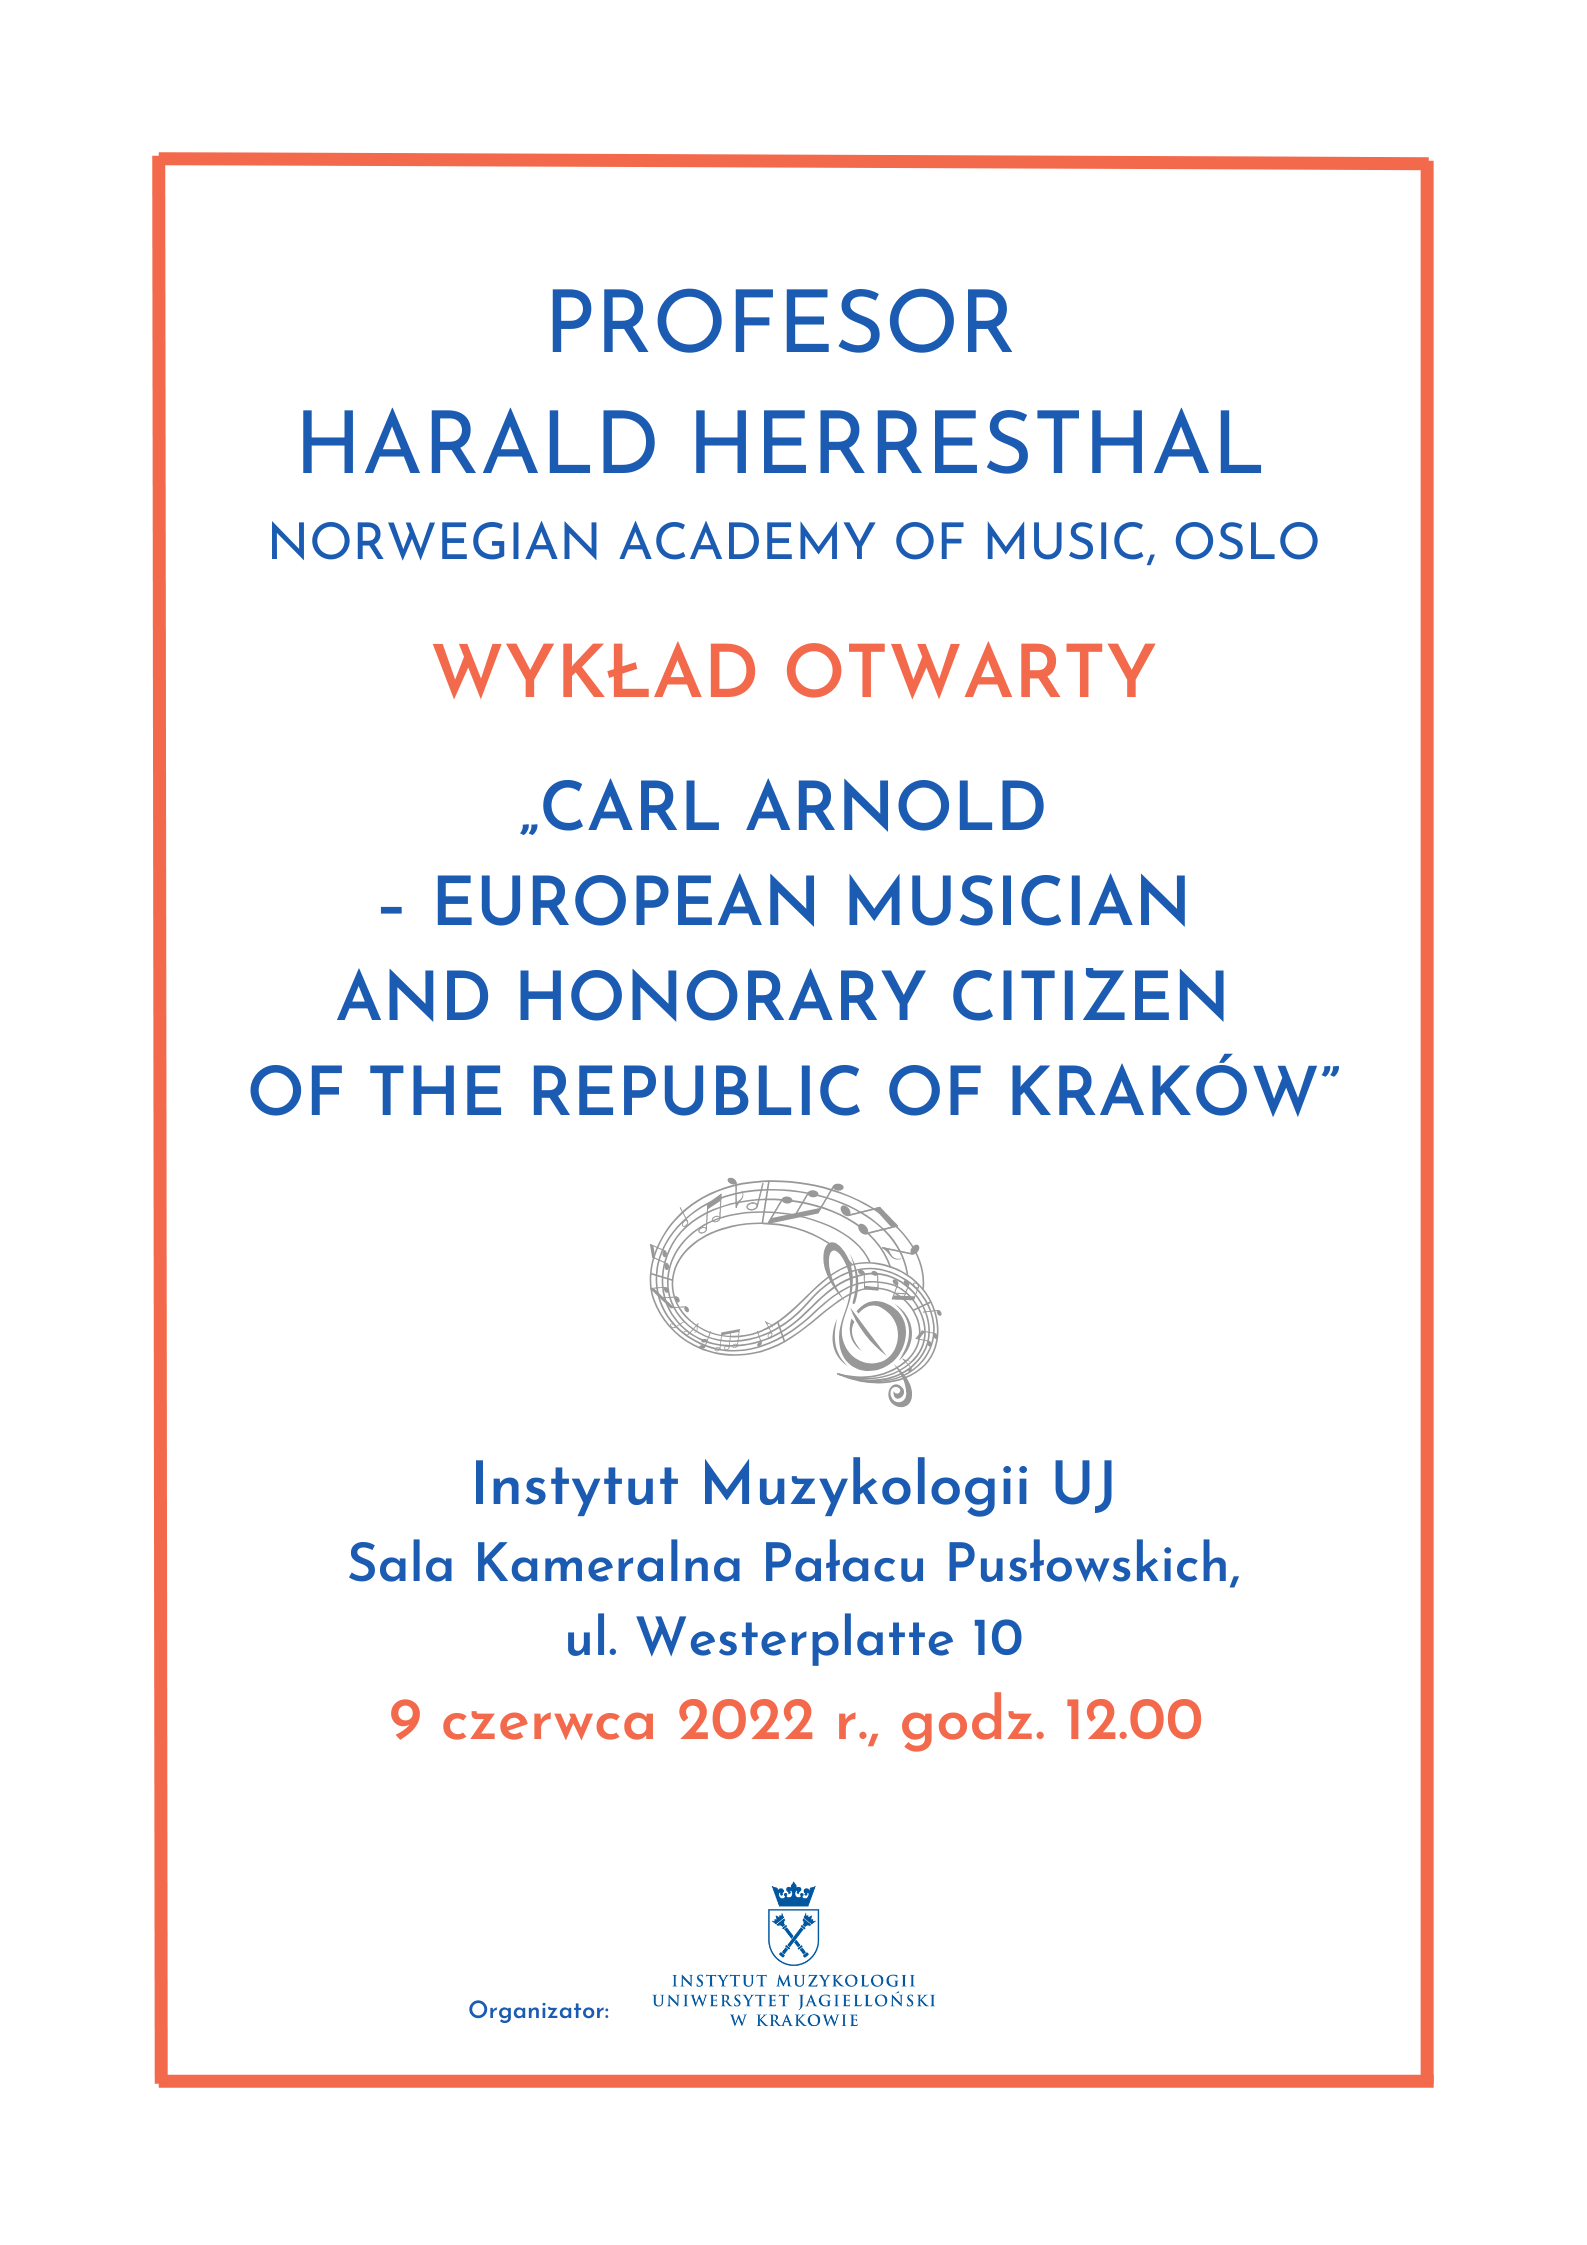 Plakat - Wykład otwarty Profesora Haralda Herresthala z Norwegian Academy of Music w Oslo